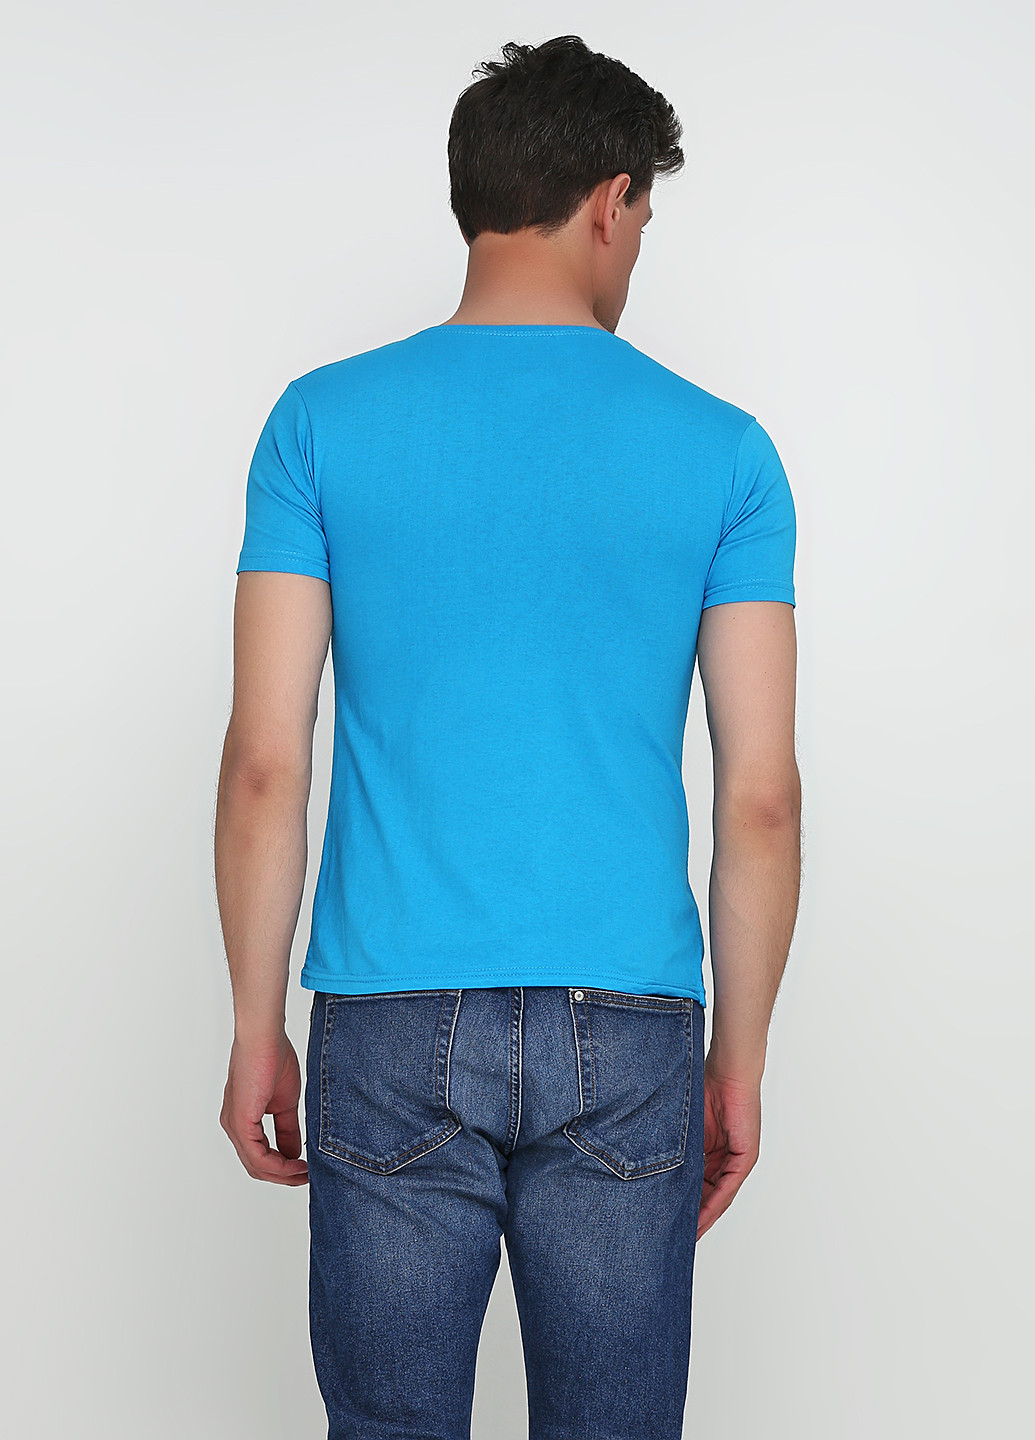 Голубая футболка Evren